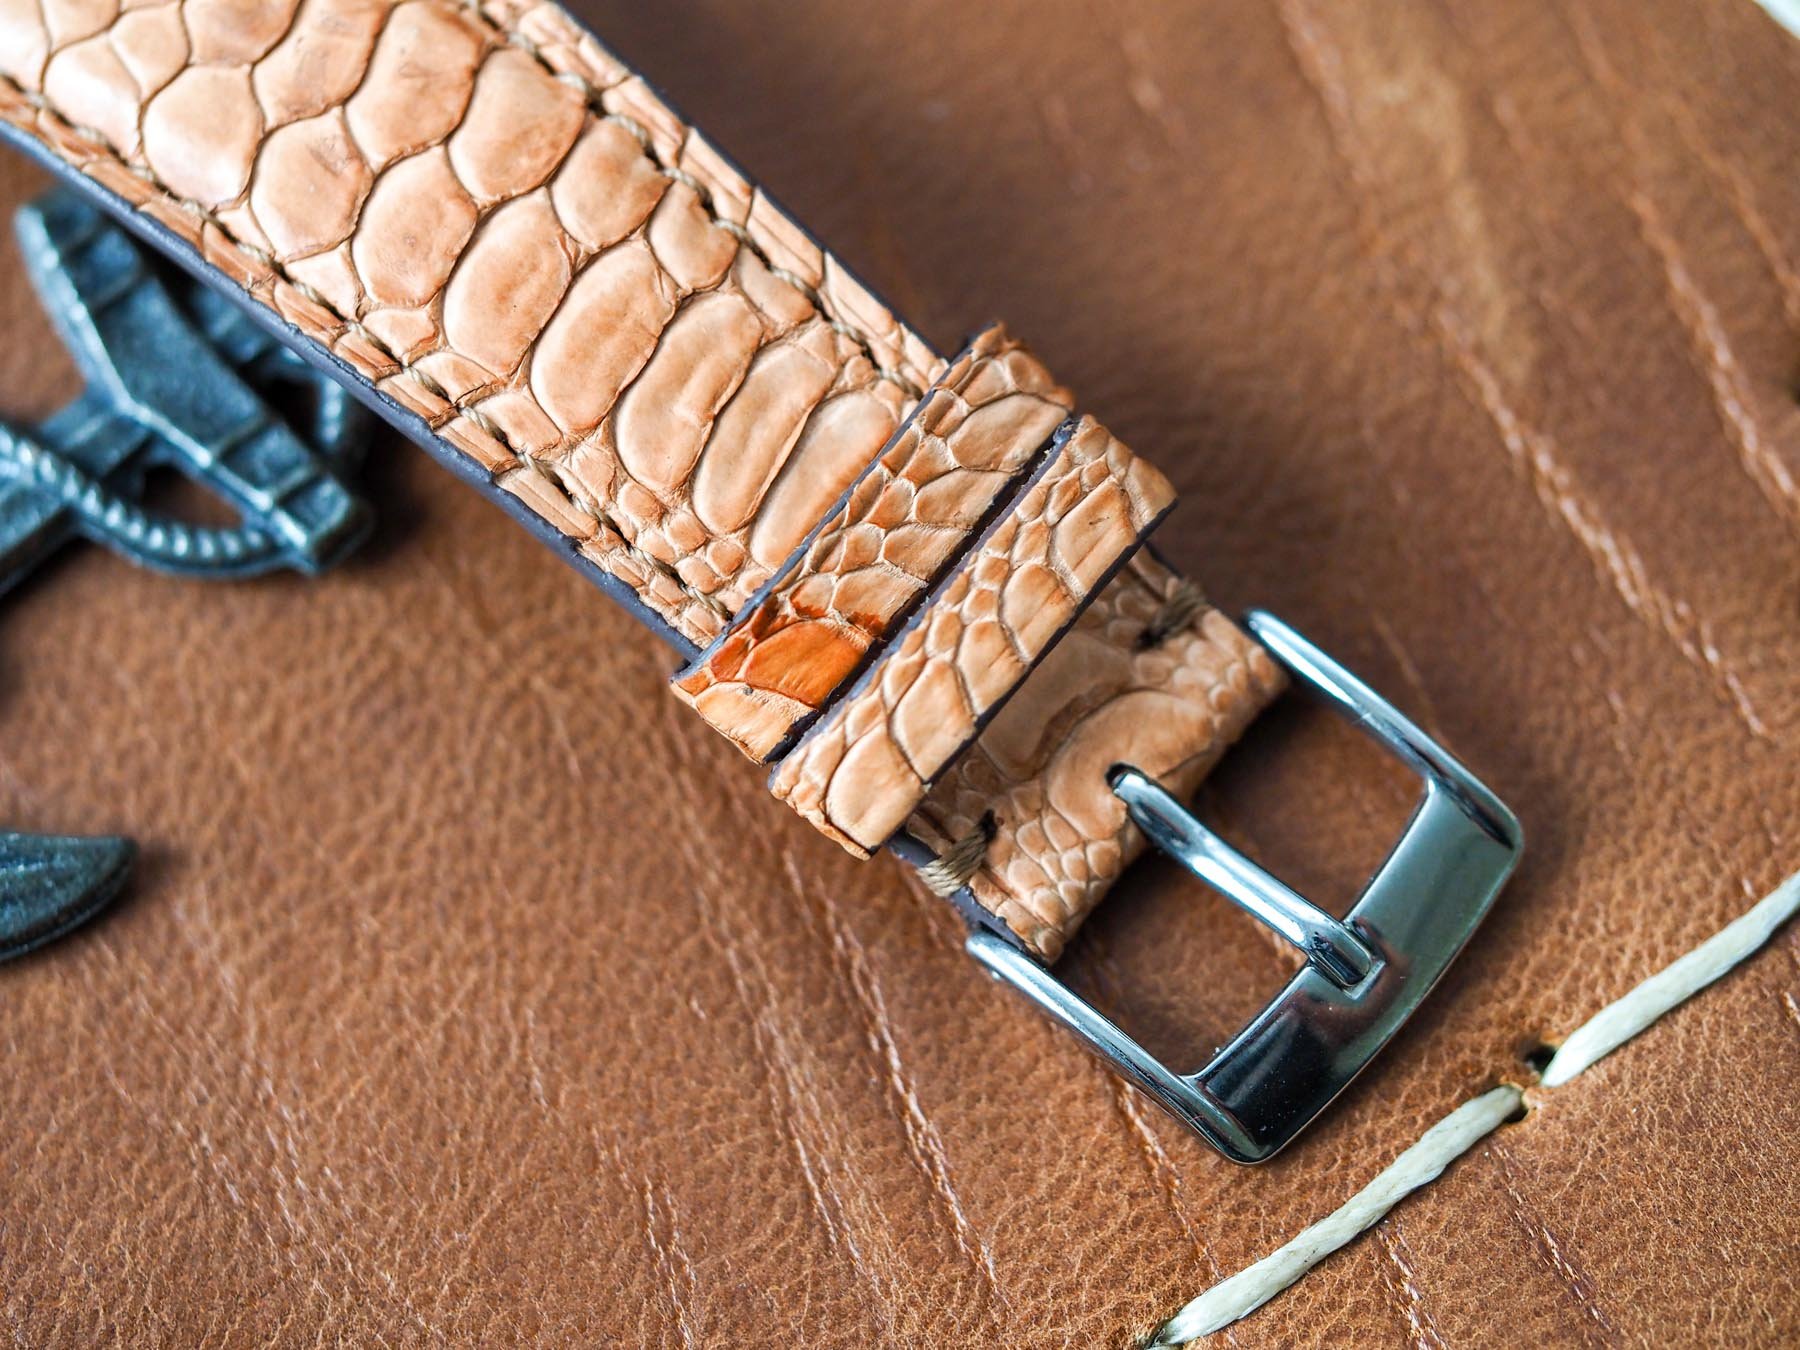 Oscar Black Handcrafted Ostrich Leg Leather Watch Strap